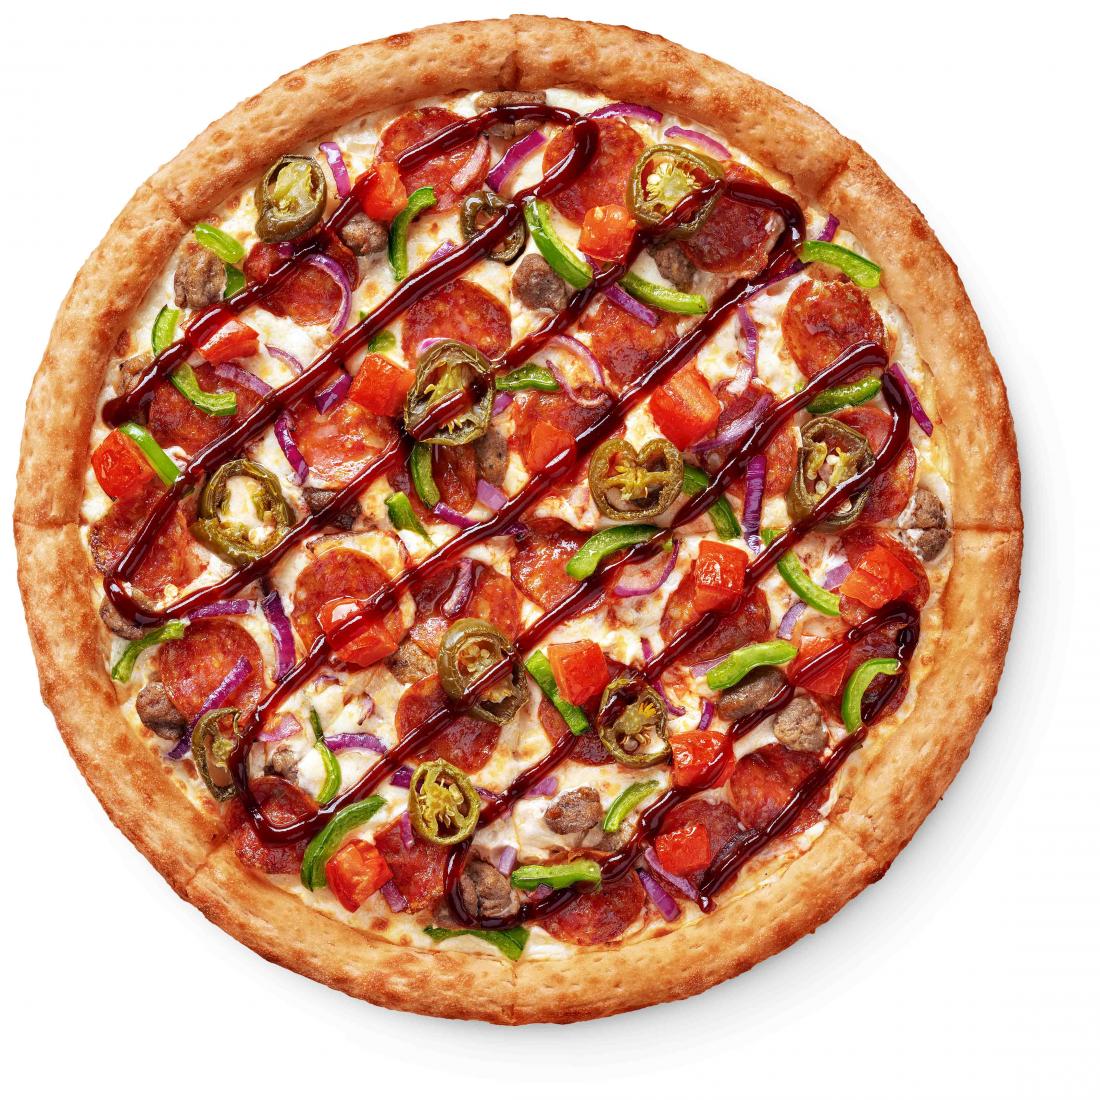 сколько калорий в одном кусочке пиццы пепперони додо фото 60